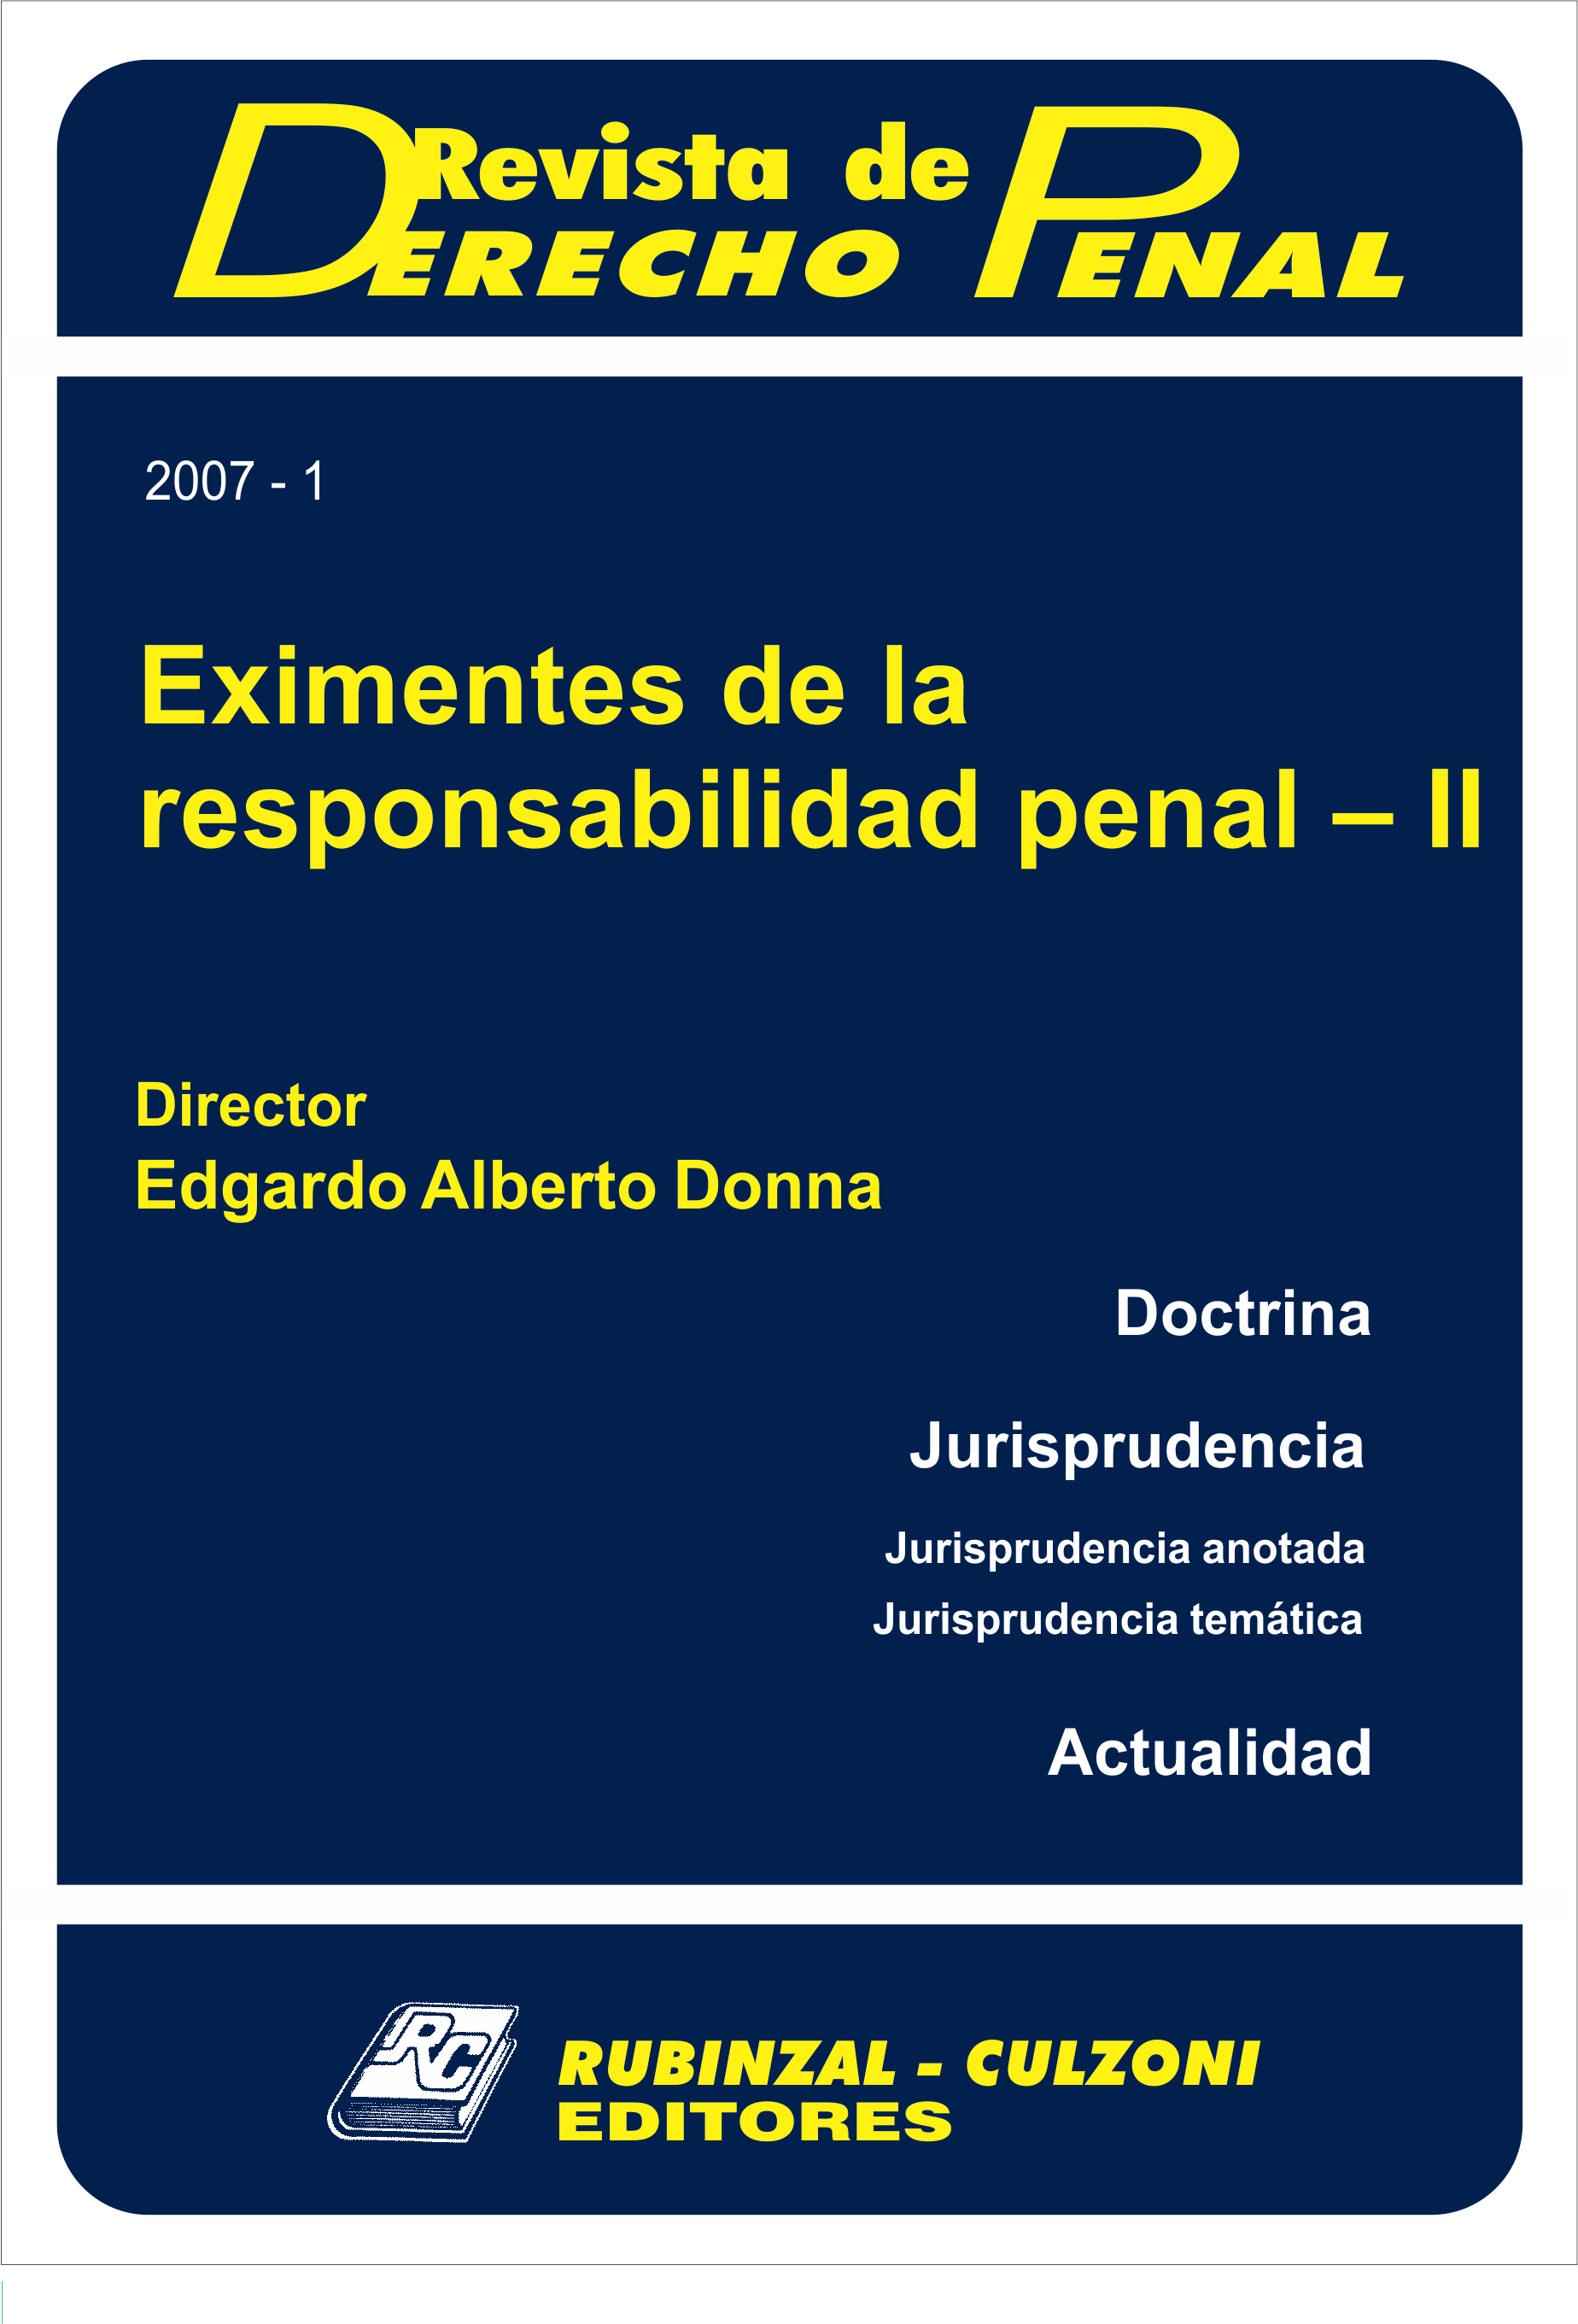 Revista de Derecho Penal - Eximentes de la responsabilidad penal - II